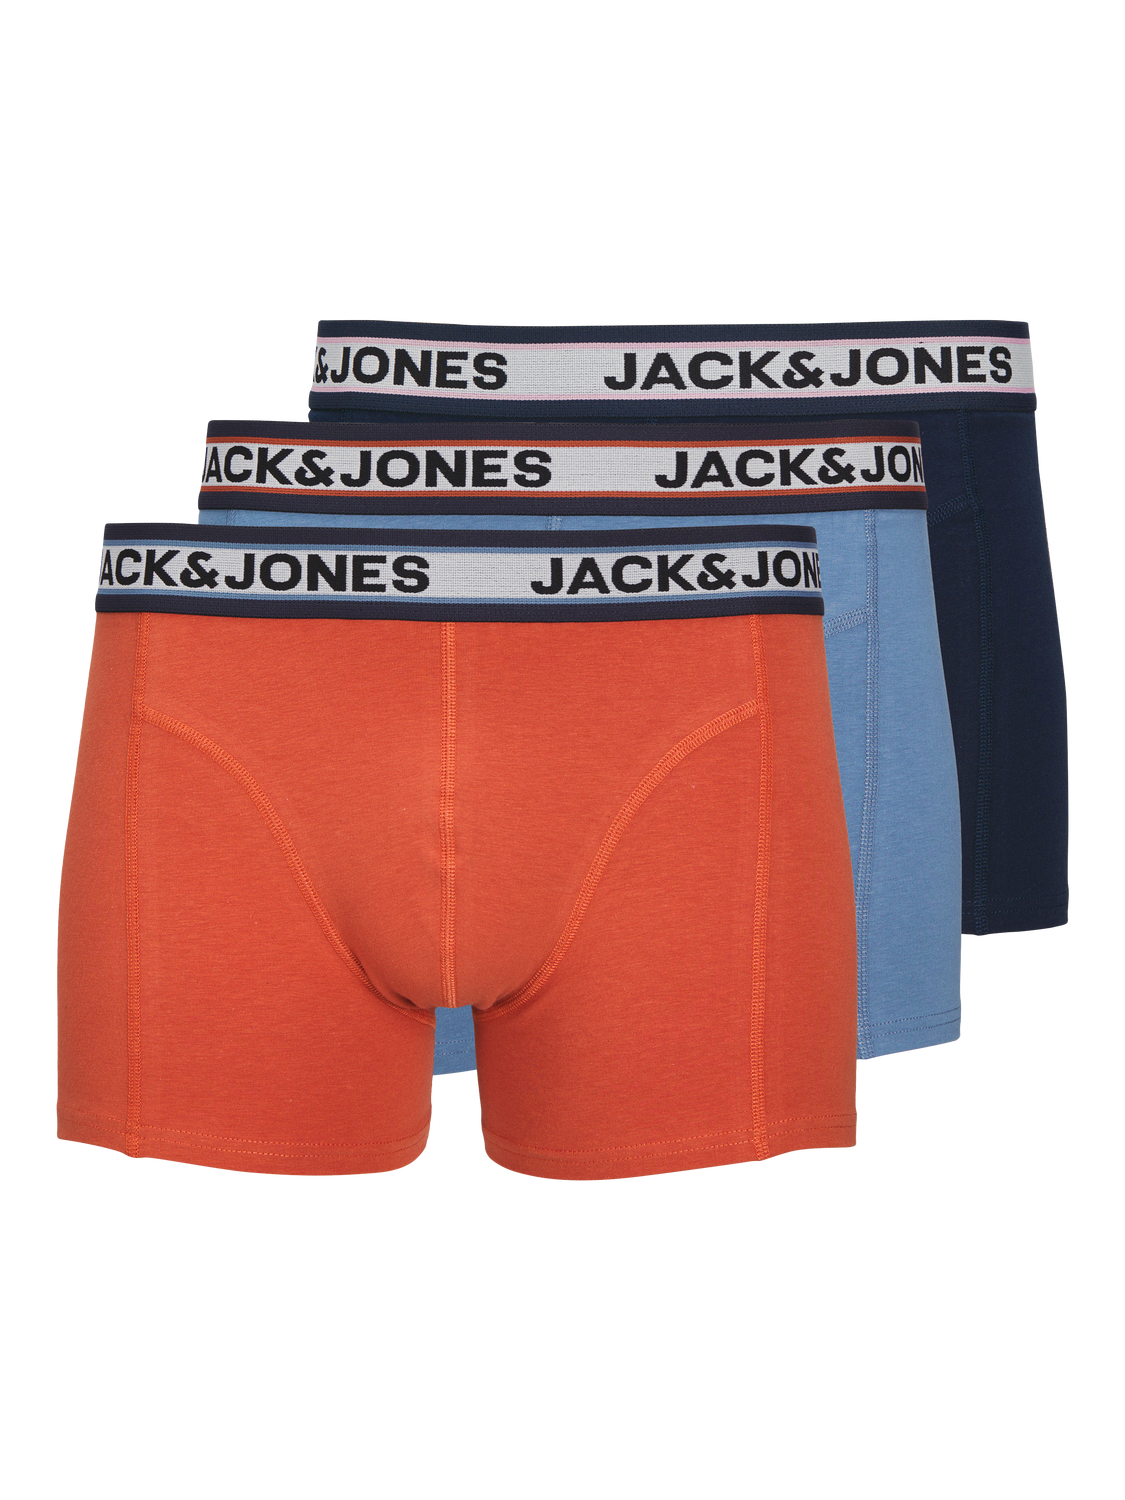 Jack & Jones Plus Size Paquete de 3 Boxers -Coronet Blue - 12259898